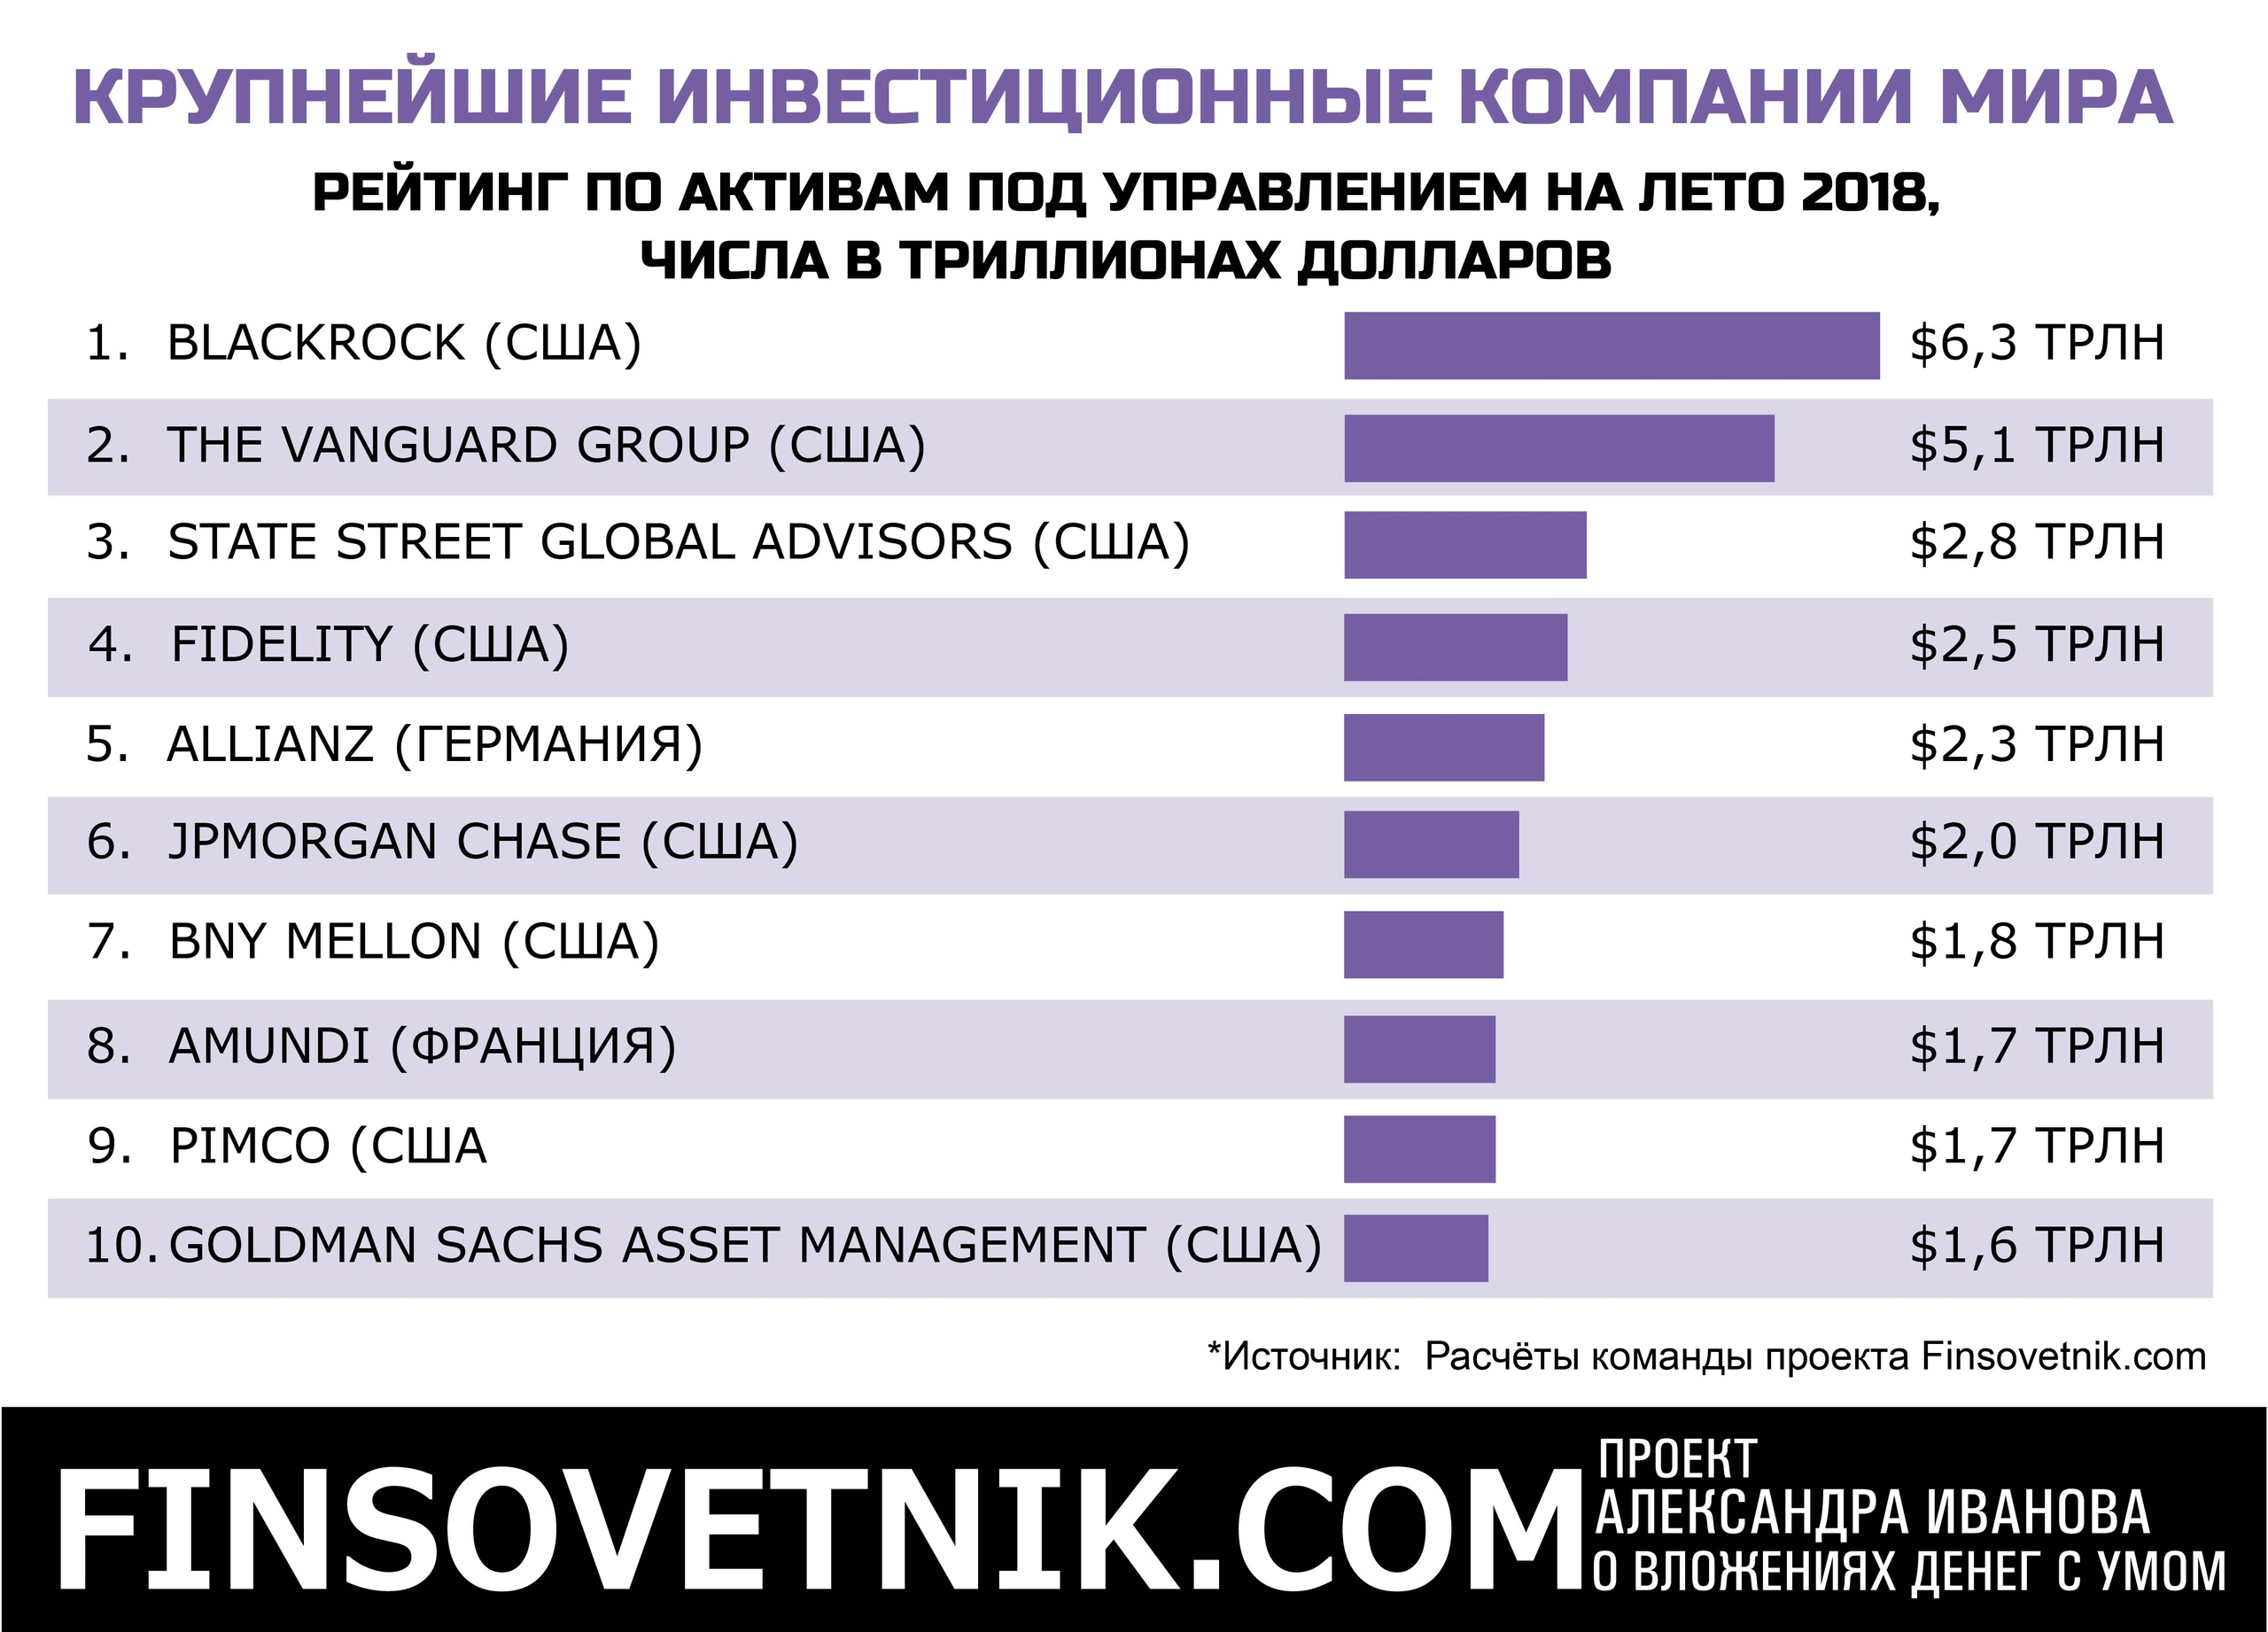 Крупнейшая организация в мире. Крупные инвестиционные компании России. Самые крупные инвестиционные компании. Крупнейшие инвестиционные компании России.